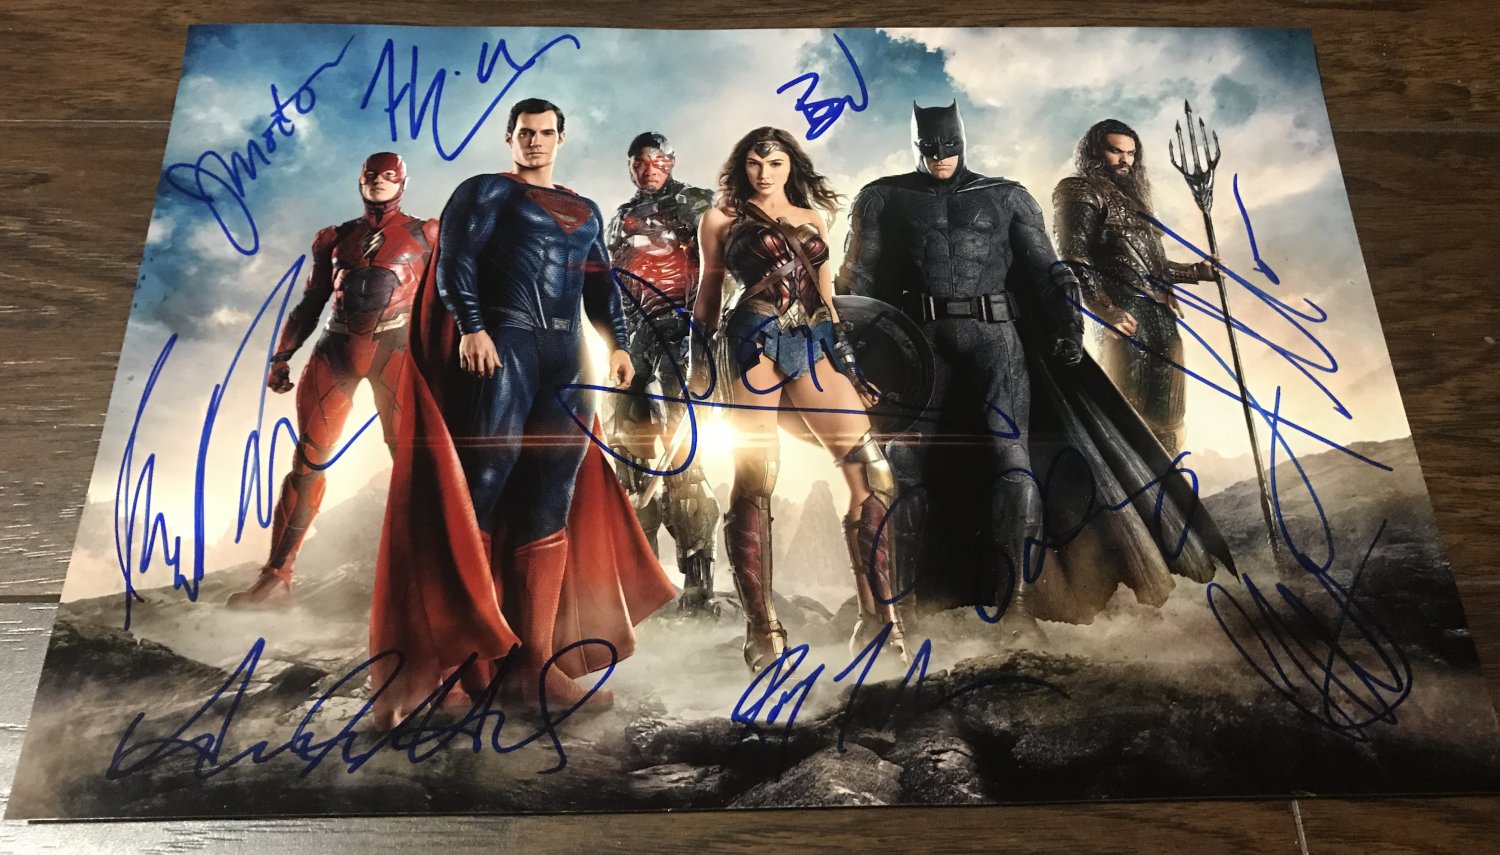 Justice League cast signed autographed 8x12 photo Ben Affleck Jason Momoa